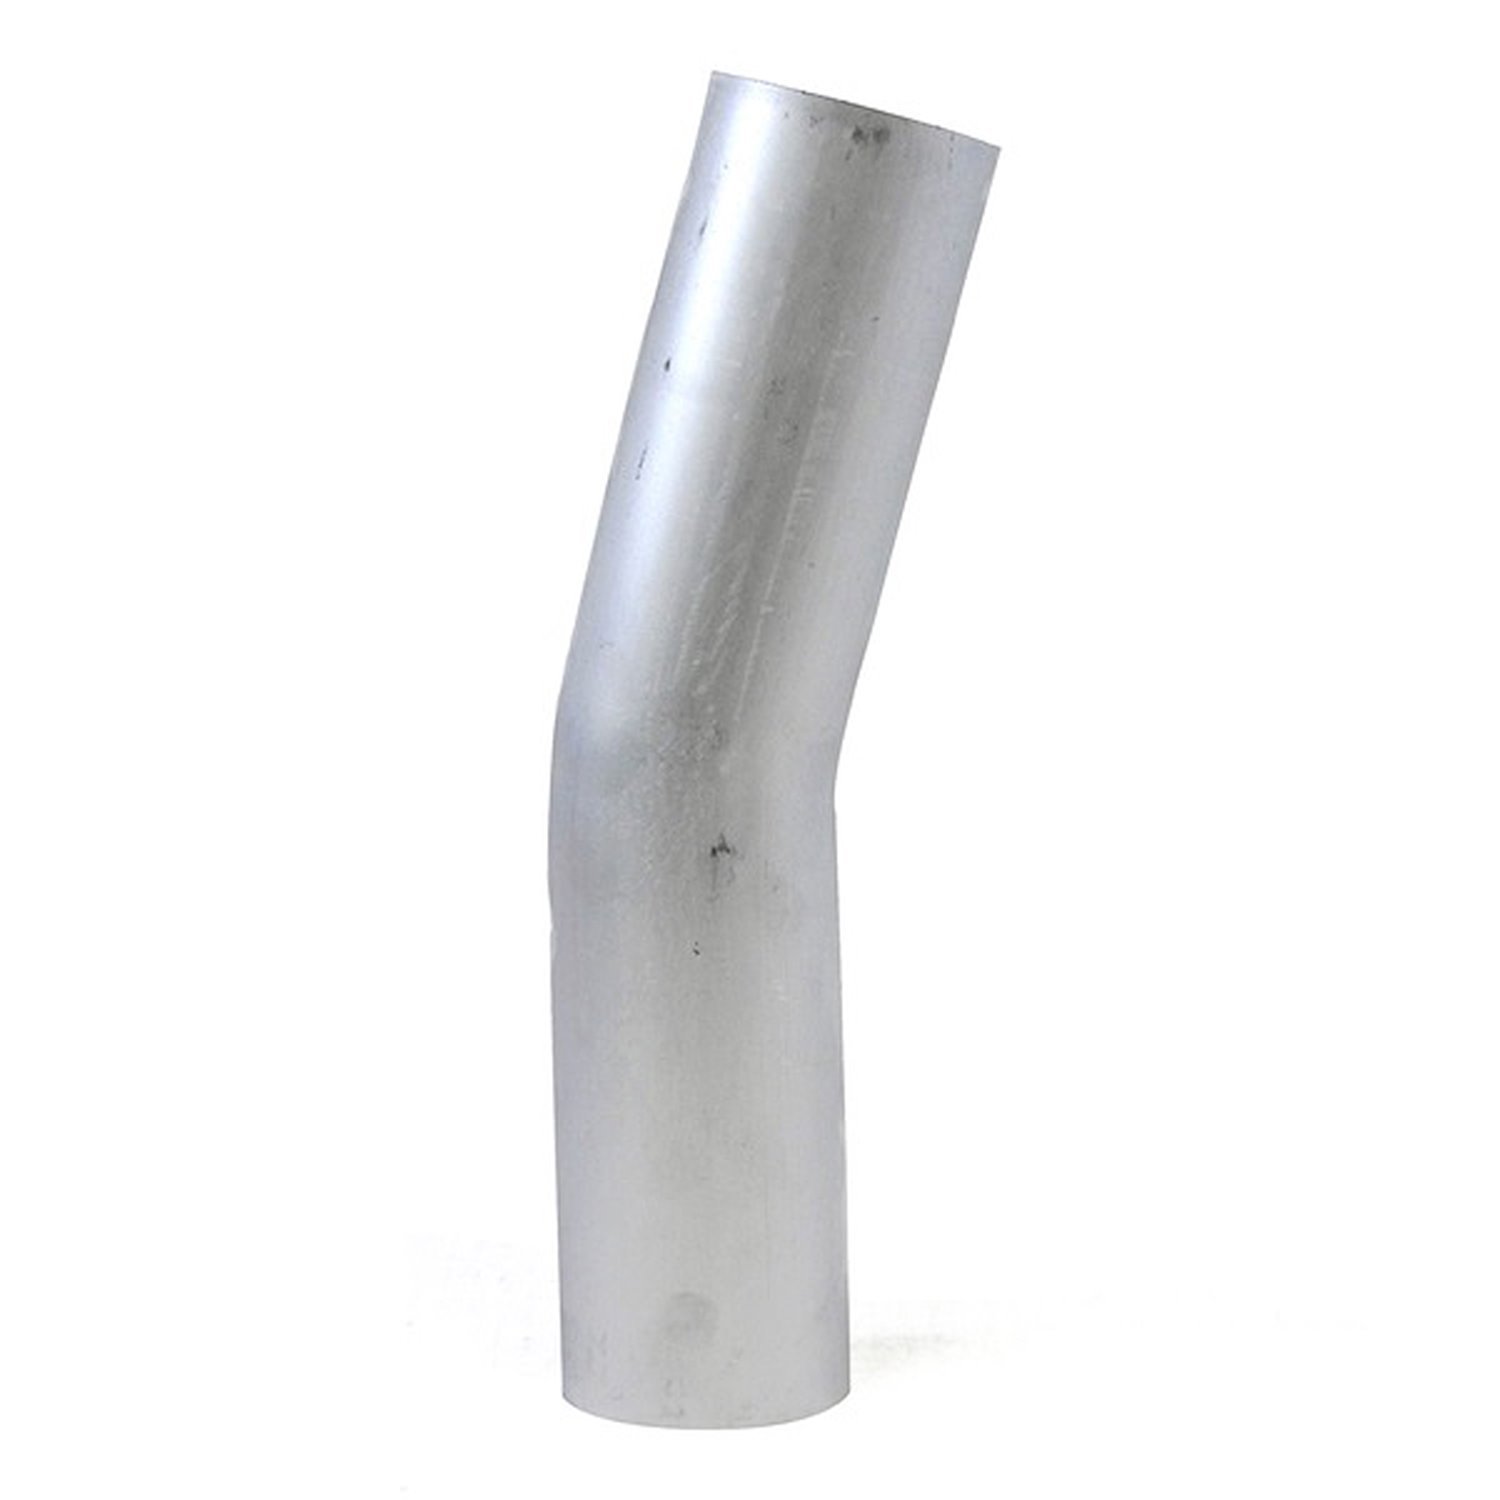 AT15-400-CLR-55 Aluminum Elbow Tube, 6061 Aluminum, 15-Degree Bend Elbow Tubing, 4 in. OD, Large Radius, 5-1/2 in. CLR